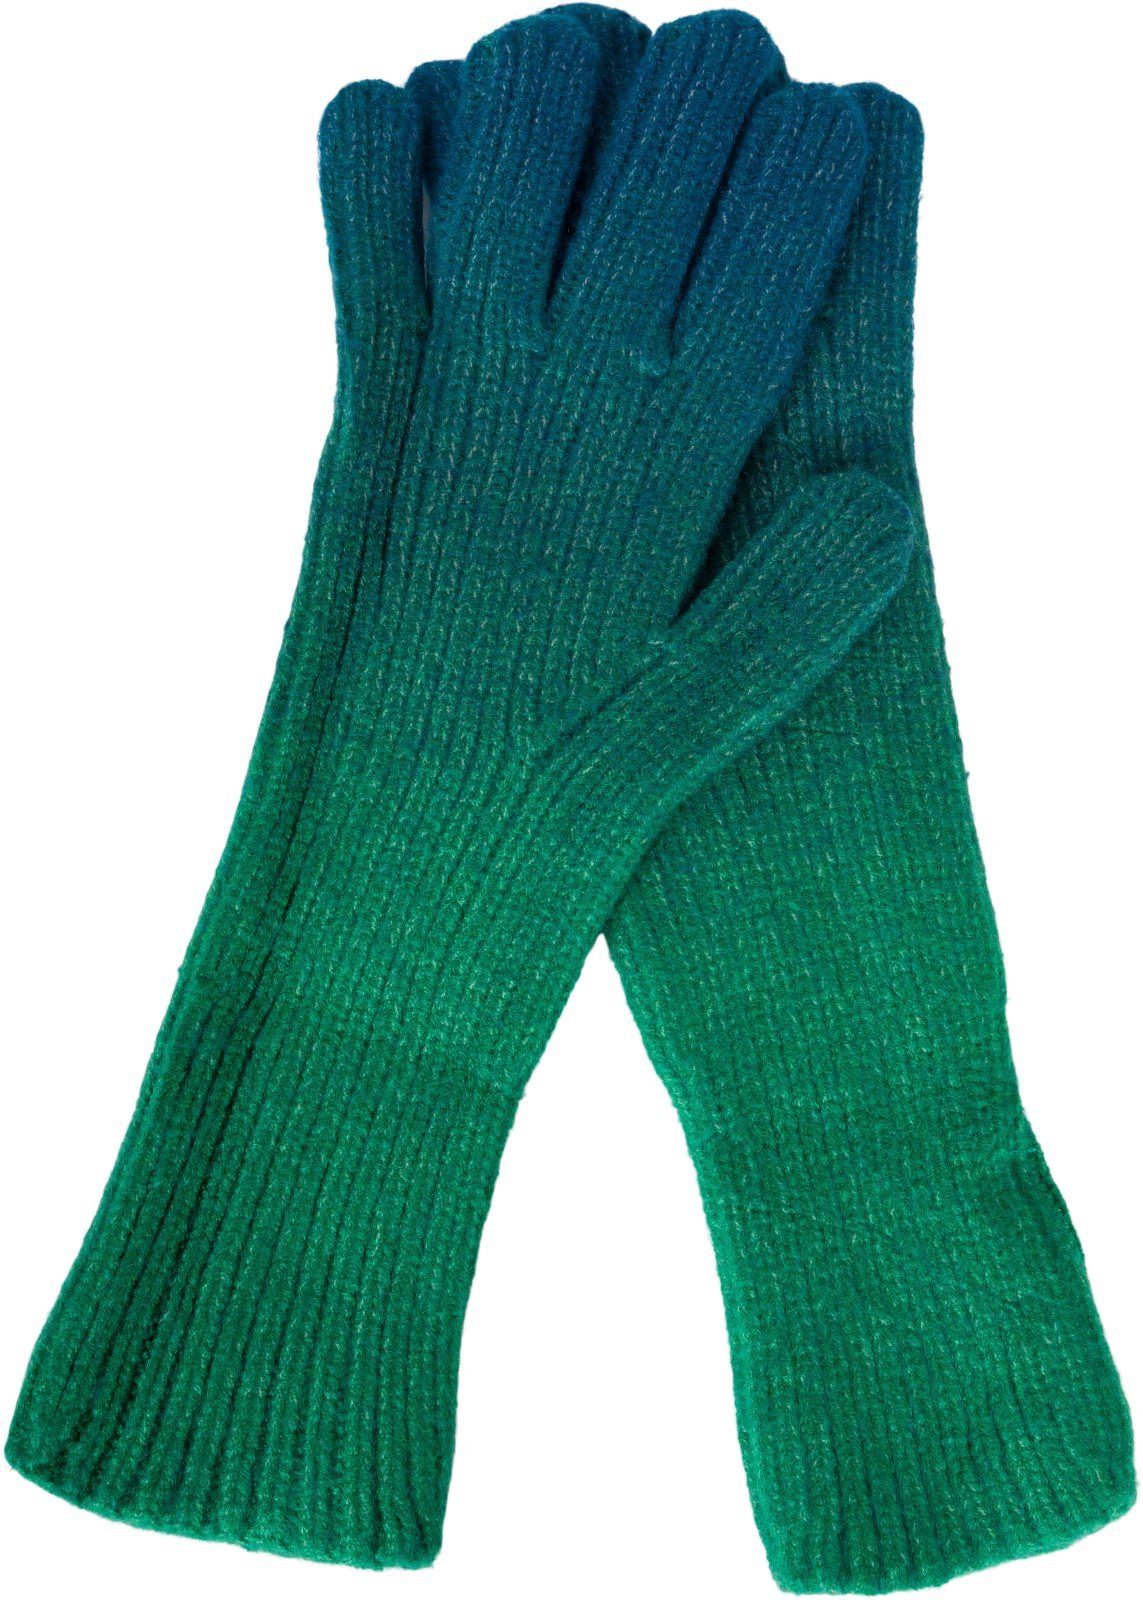 Muster Strickhandschuhe Petrol-Grün Farbverlauf Strickhandschuhe styleBREAKER